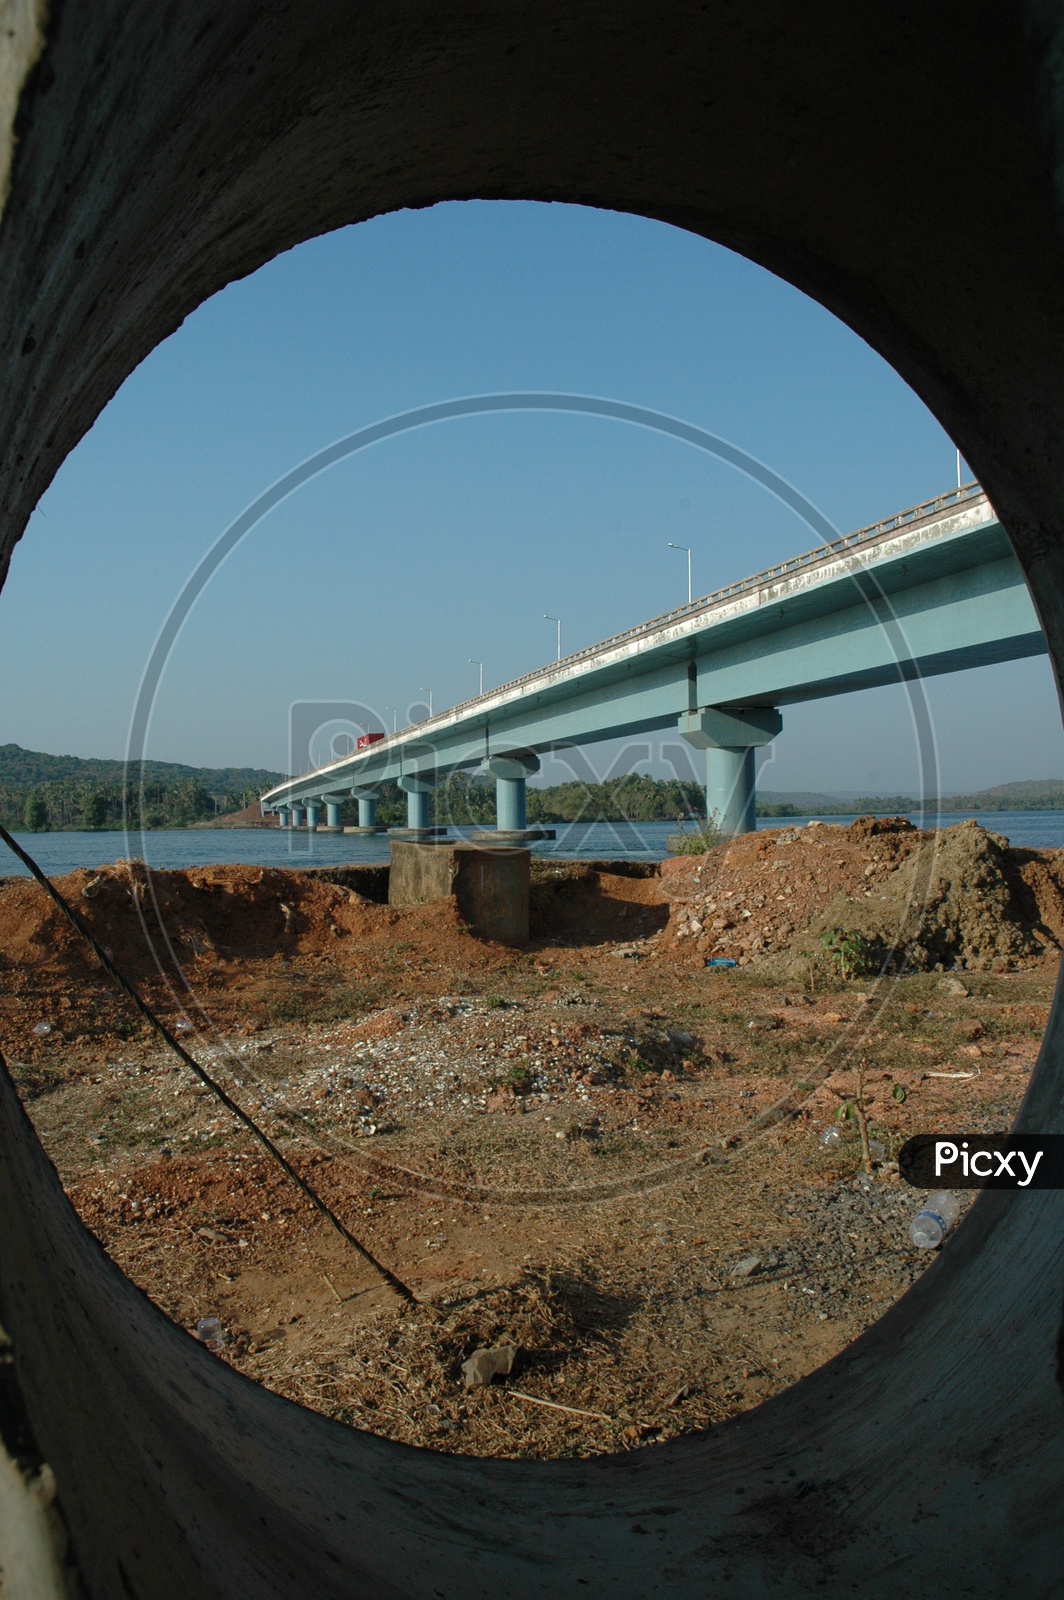 Tunnel view of the Mandovi bridge over the Mandovi river in Goa